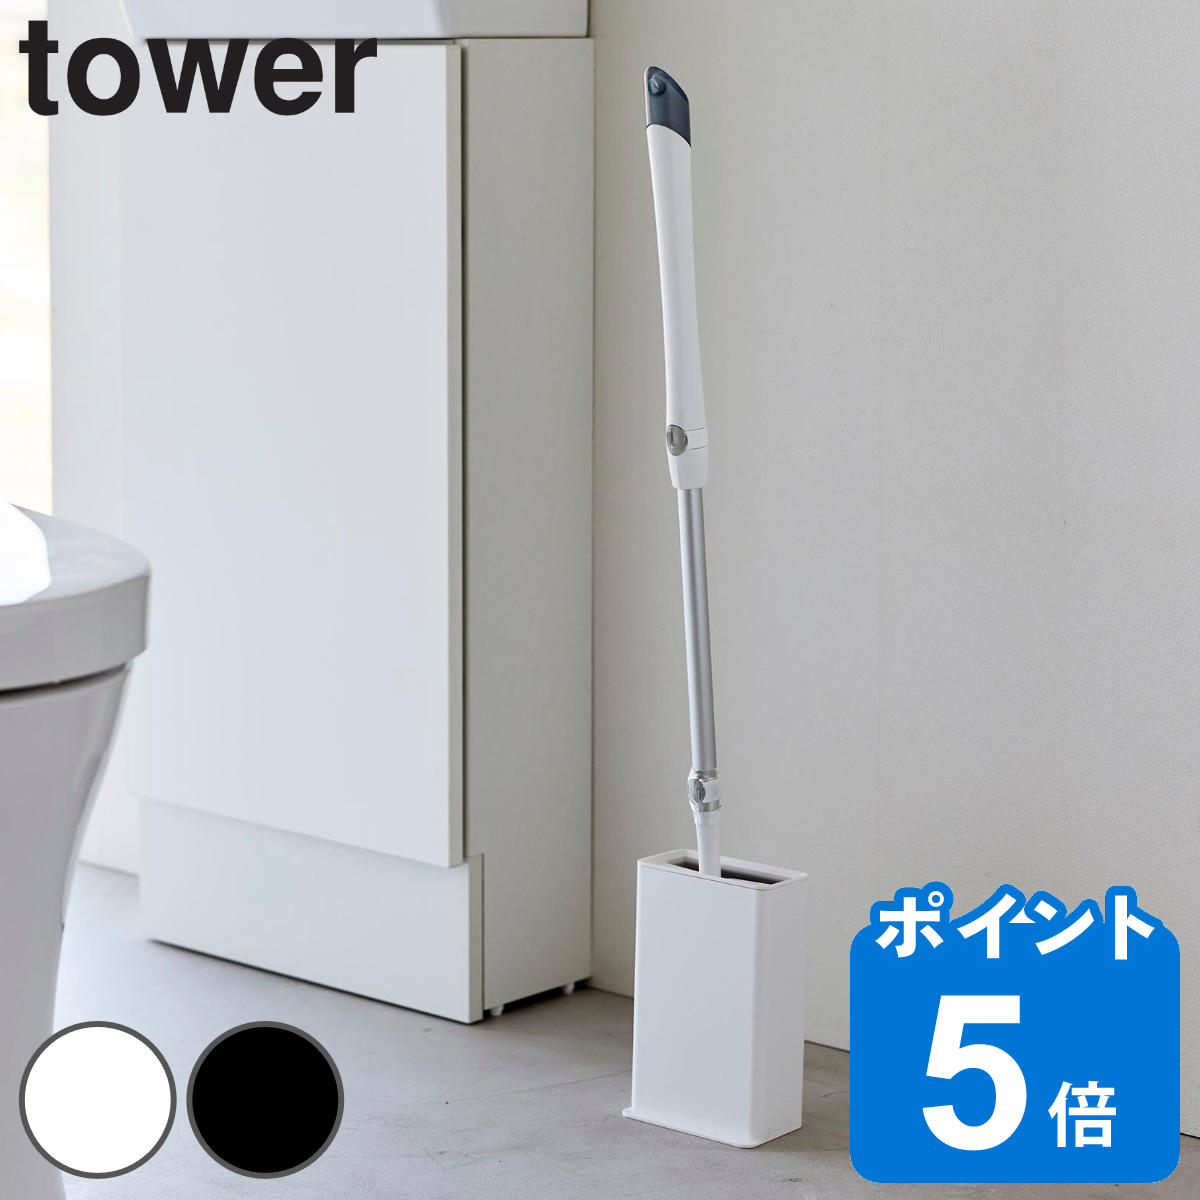 山崎実業 tower トイレワイパースタンド タワー タワーシリーズ トイレ ワイパースタンド 収納 ケース スタンド 立てて収納 蓋付き スリム 省スペース 角型 ホワイト ブラック 